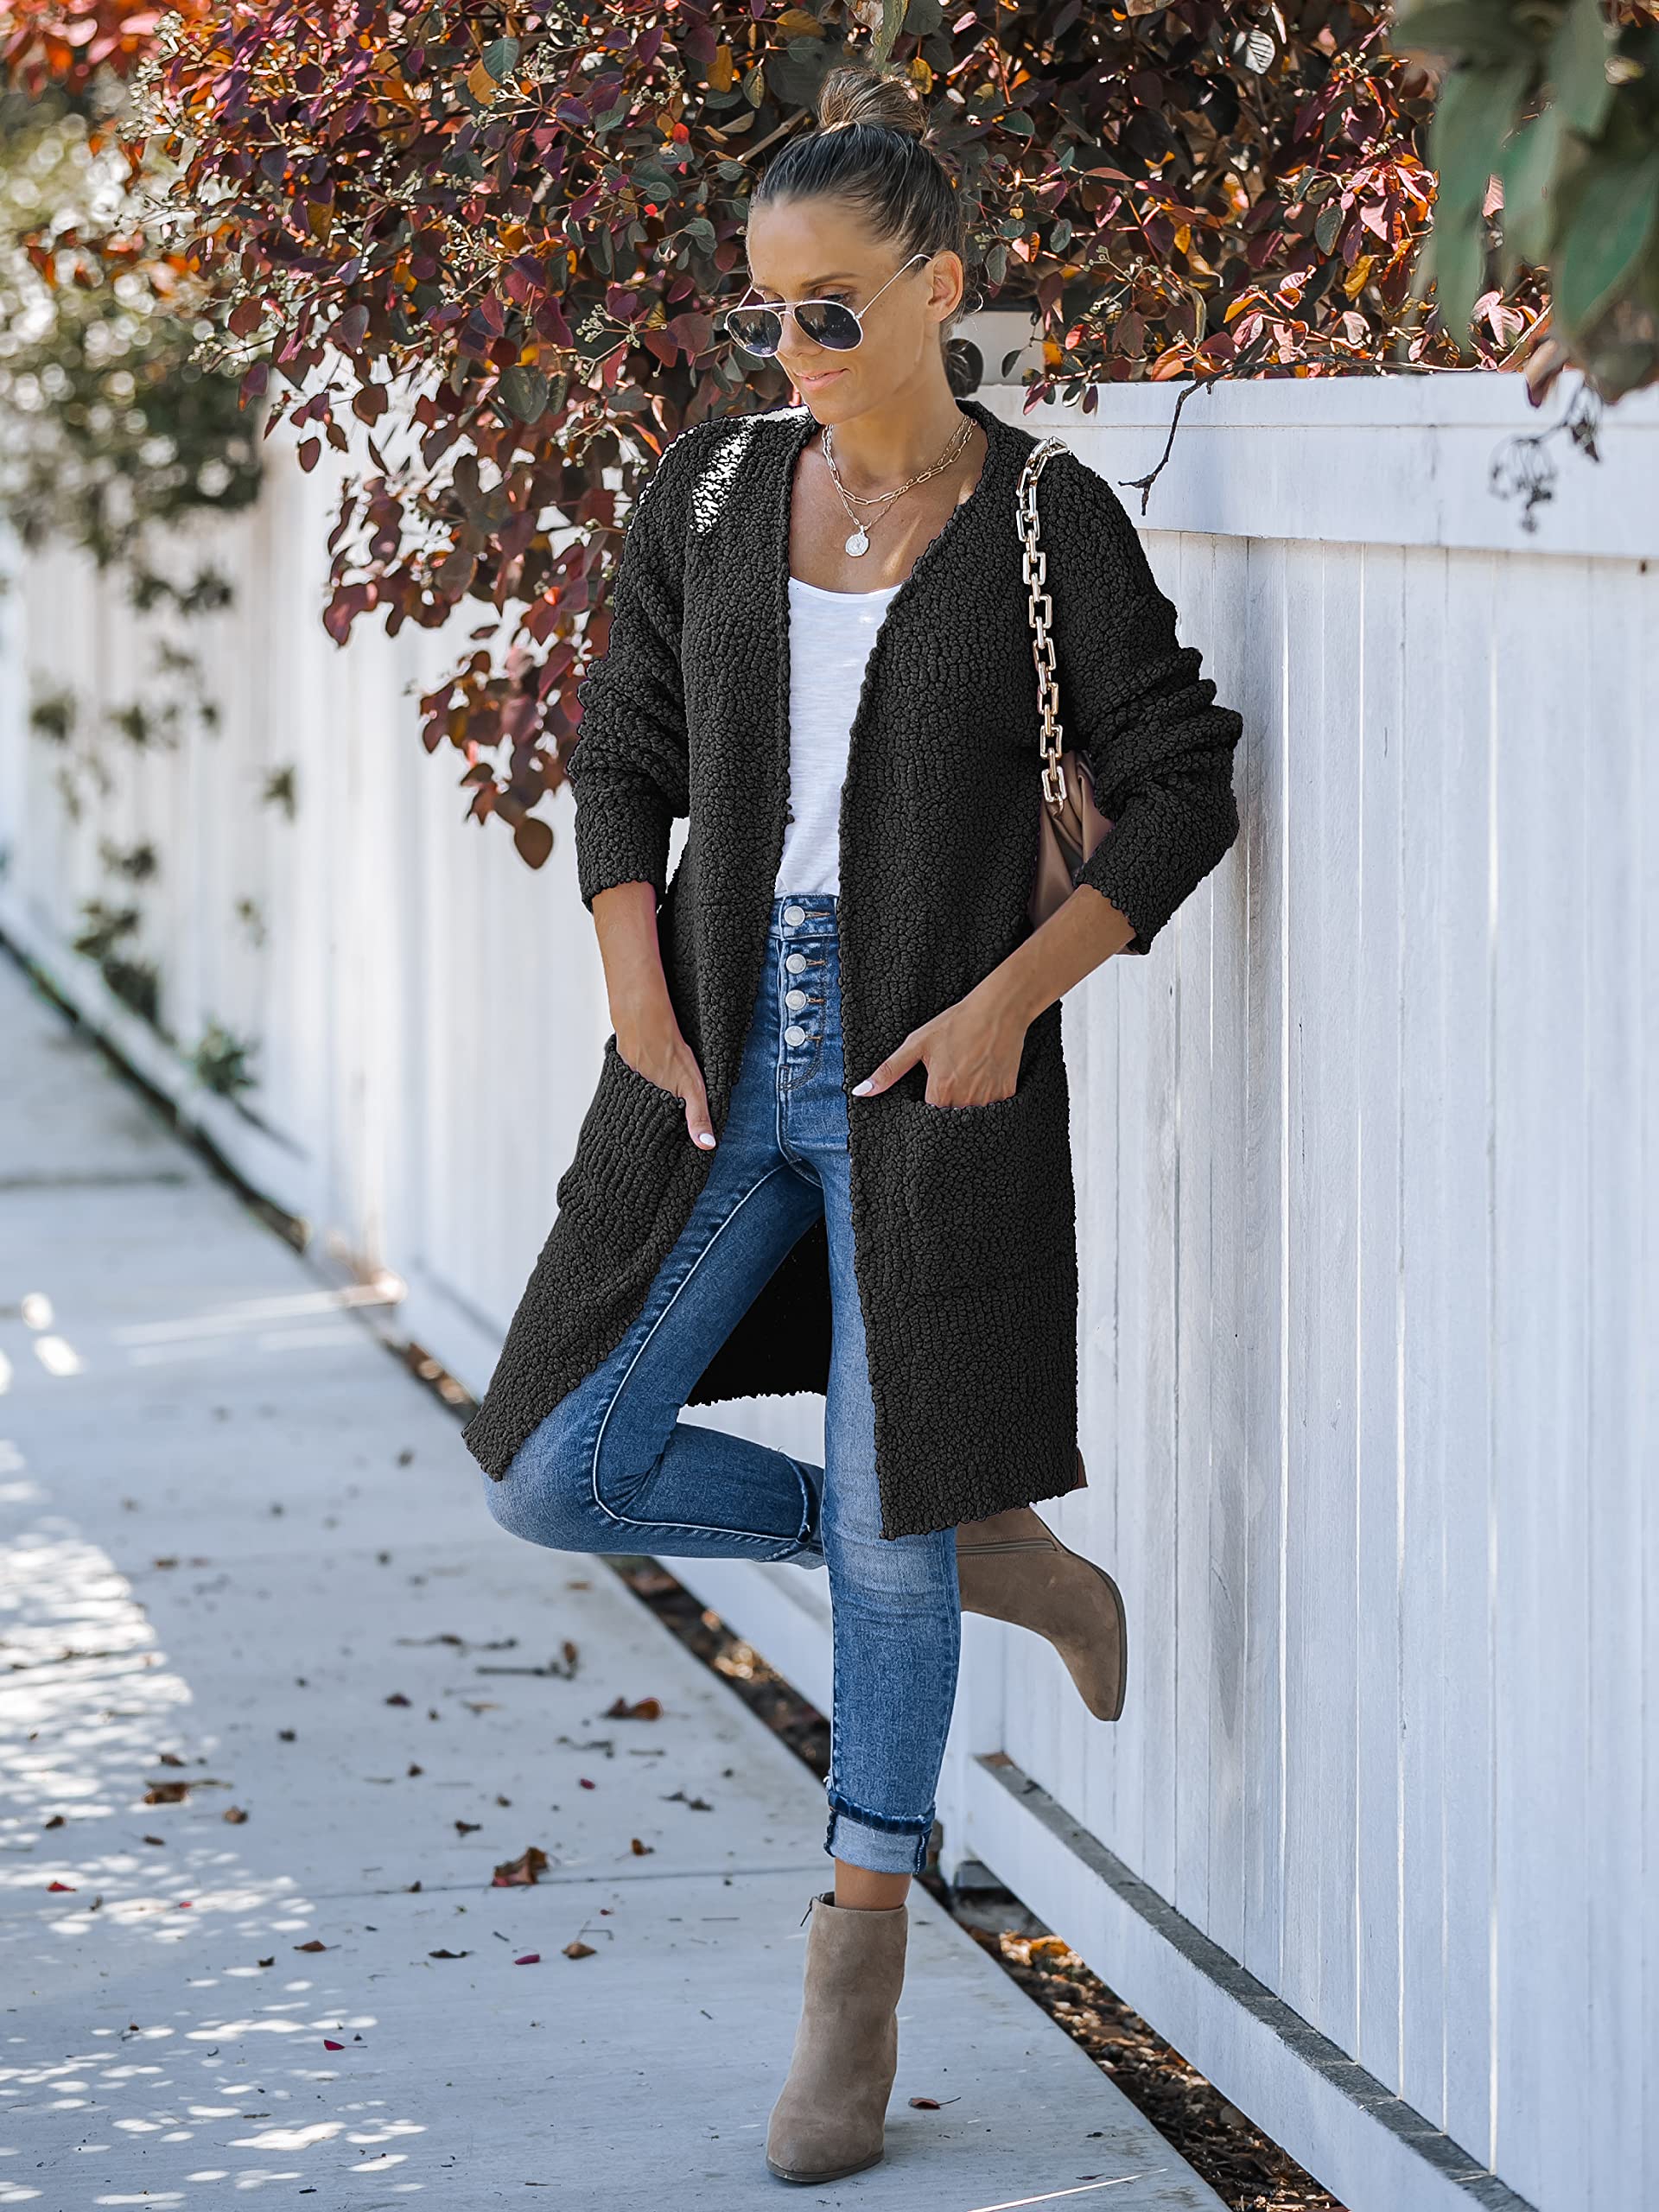 MEROKEETY Women's Long Sleeve Soft Chunky Knit Sweater Open Front Cardigan Outwear Coat A-Black